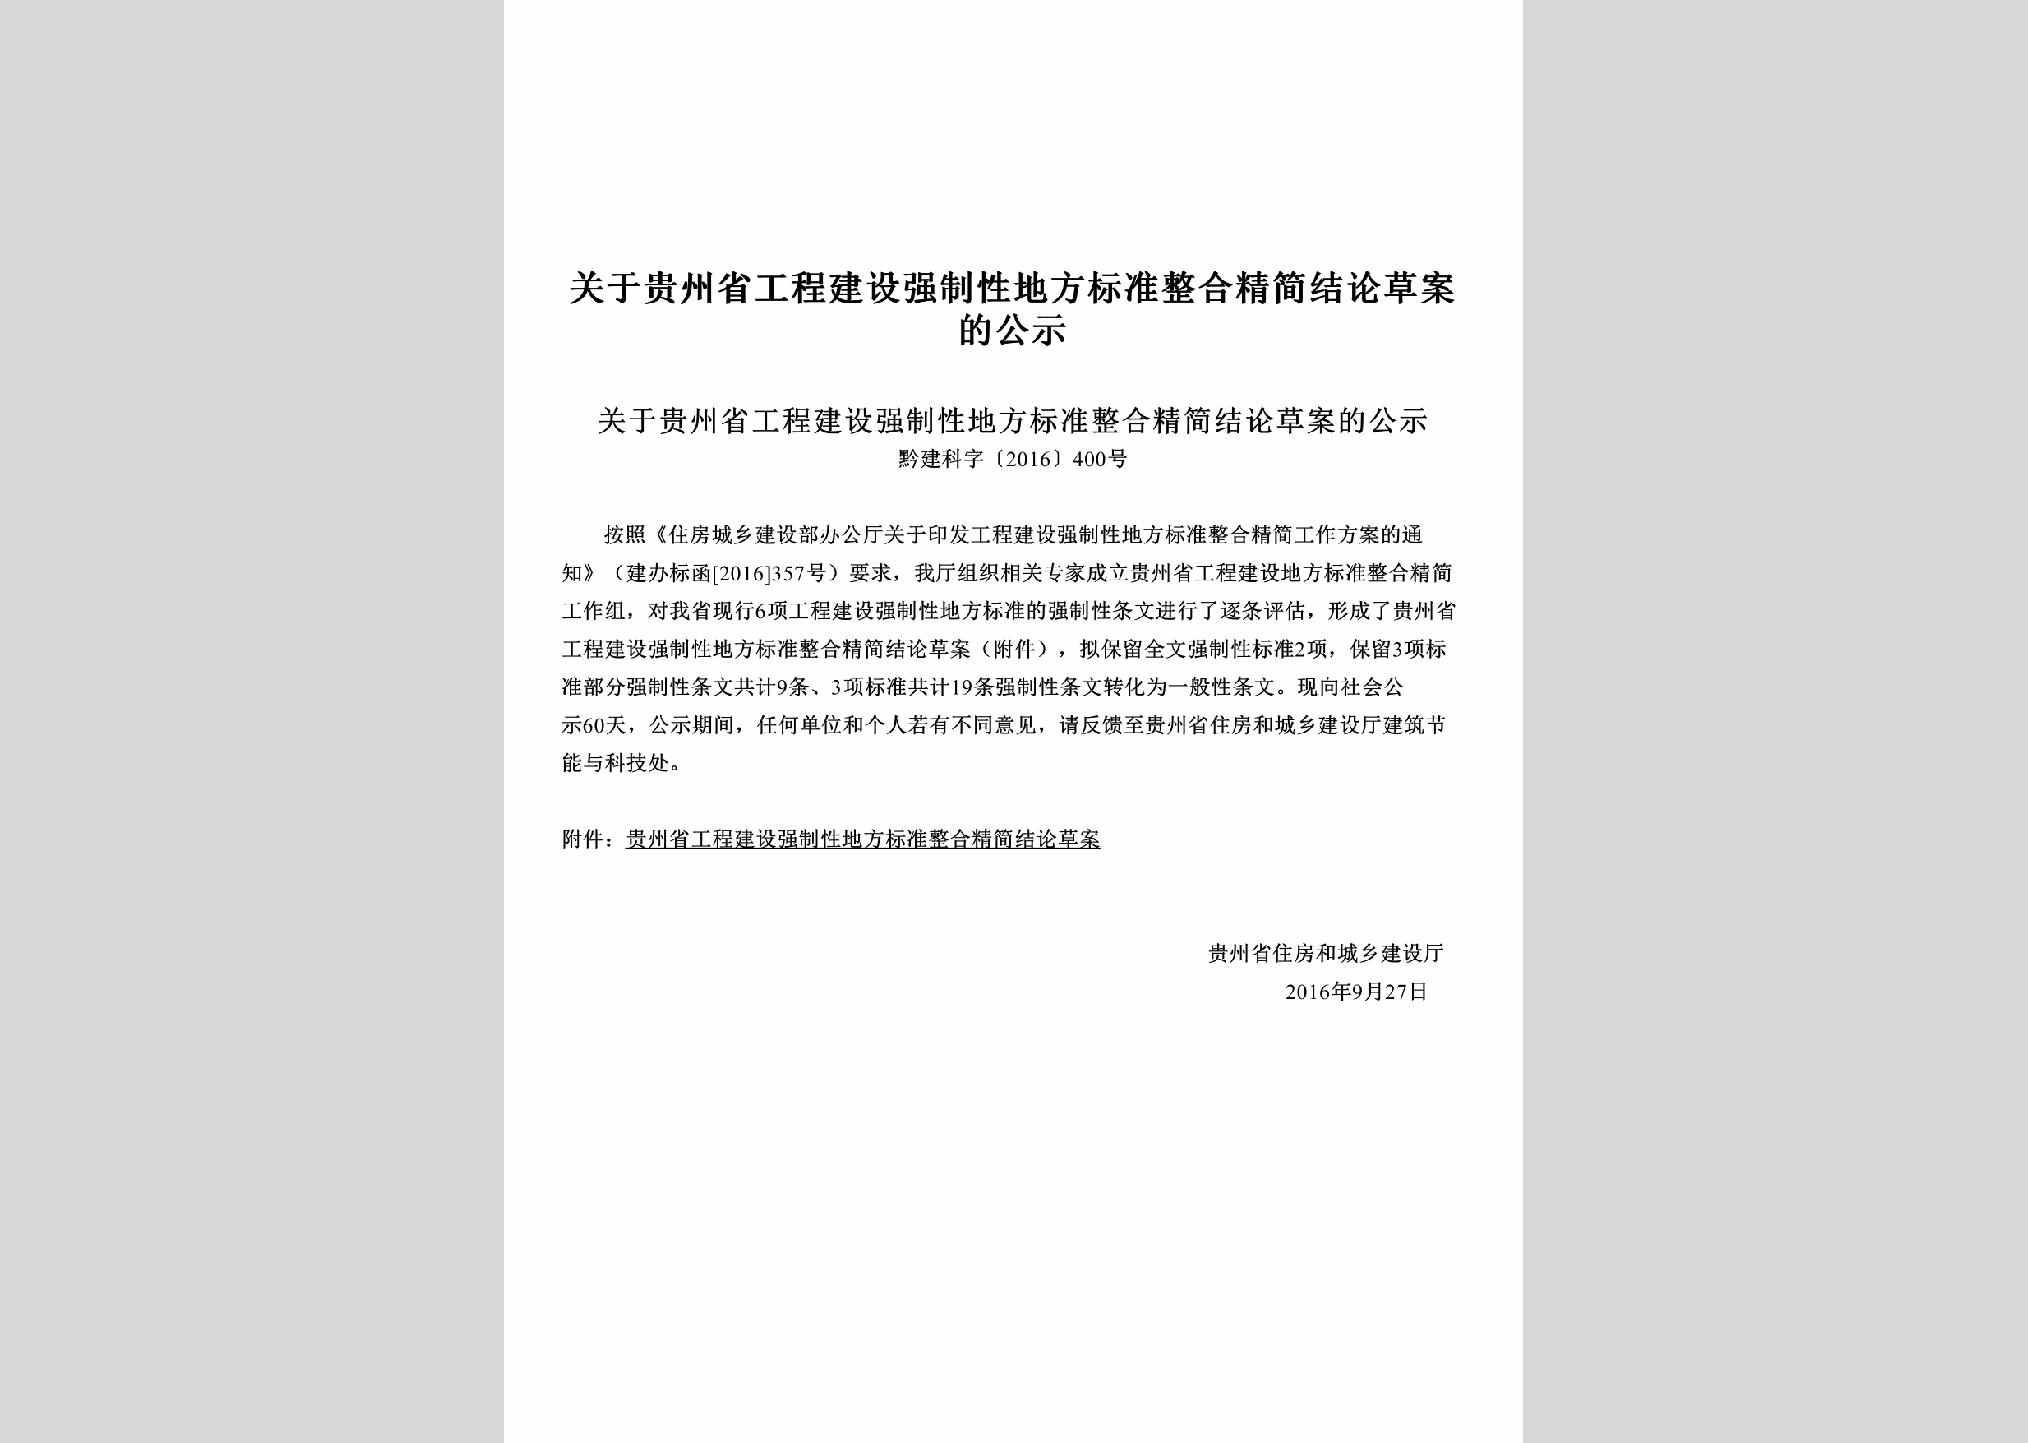 黔建科字[2016]400号：关于贵州省工程建设强制性地方标准整合精简结论草案的公示